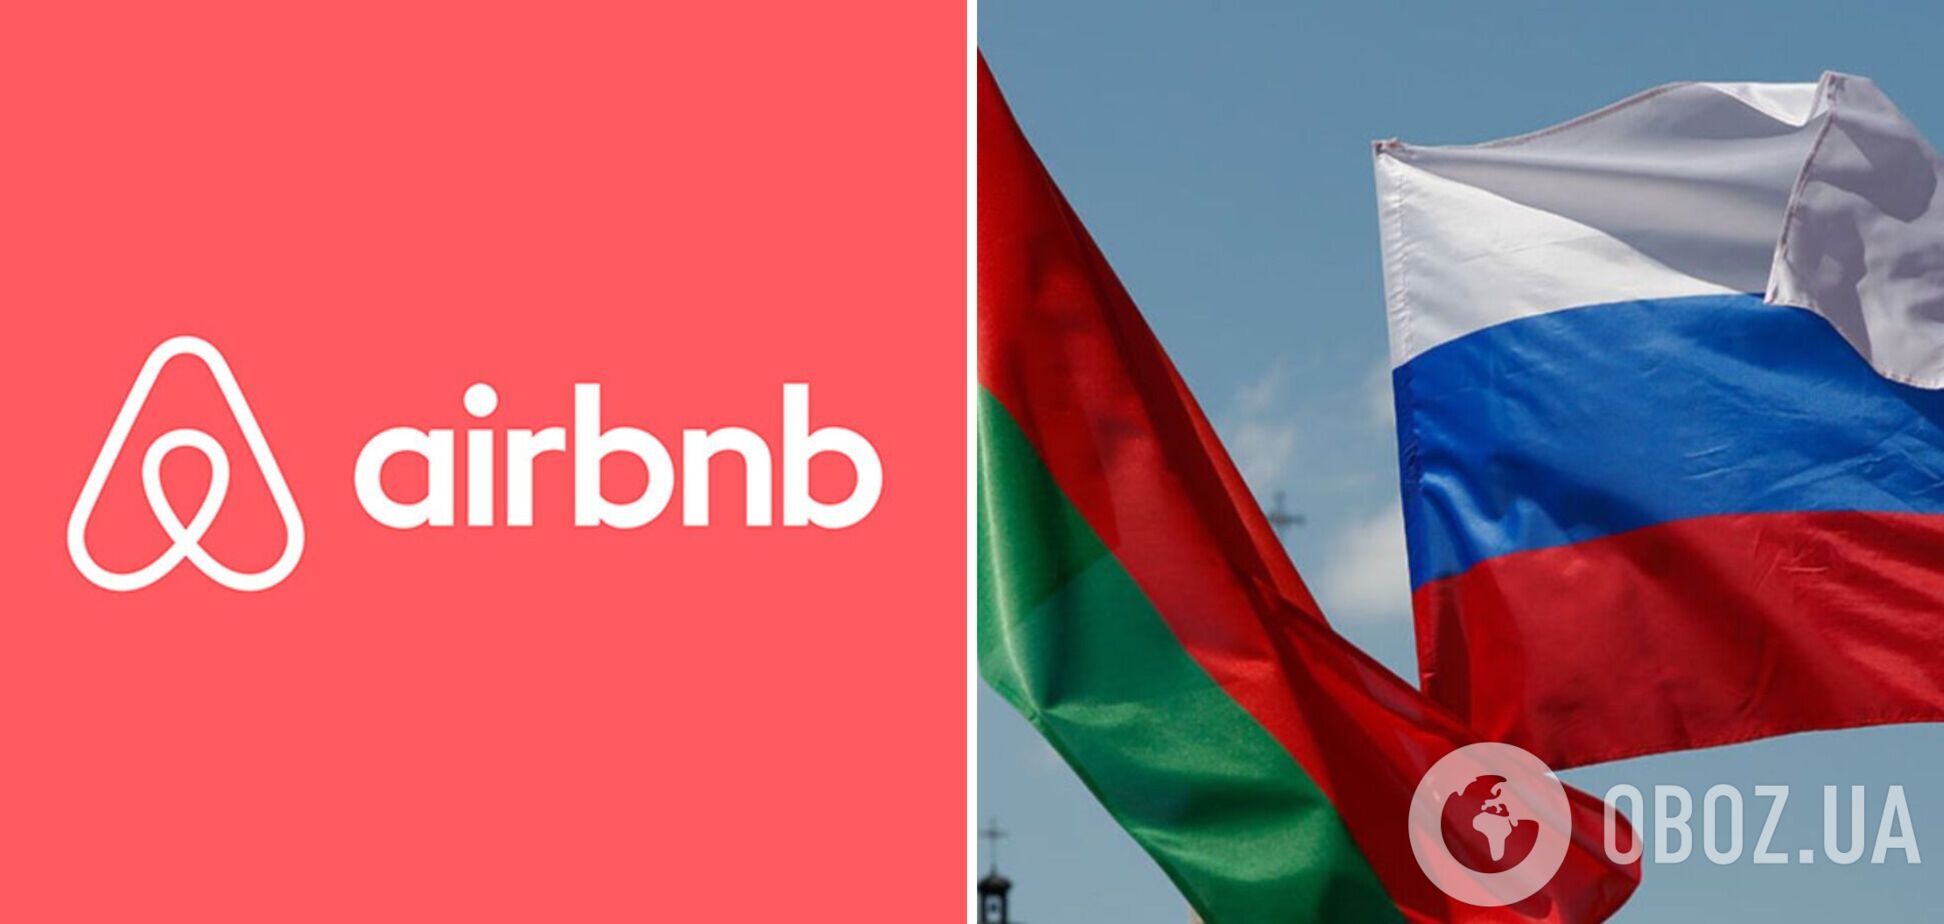 Популярный сервис аренды жилья Airbnb остановил работу в России и Беларуси